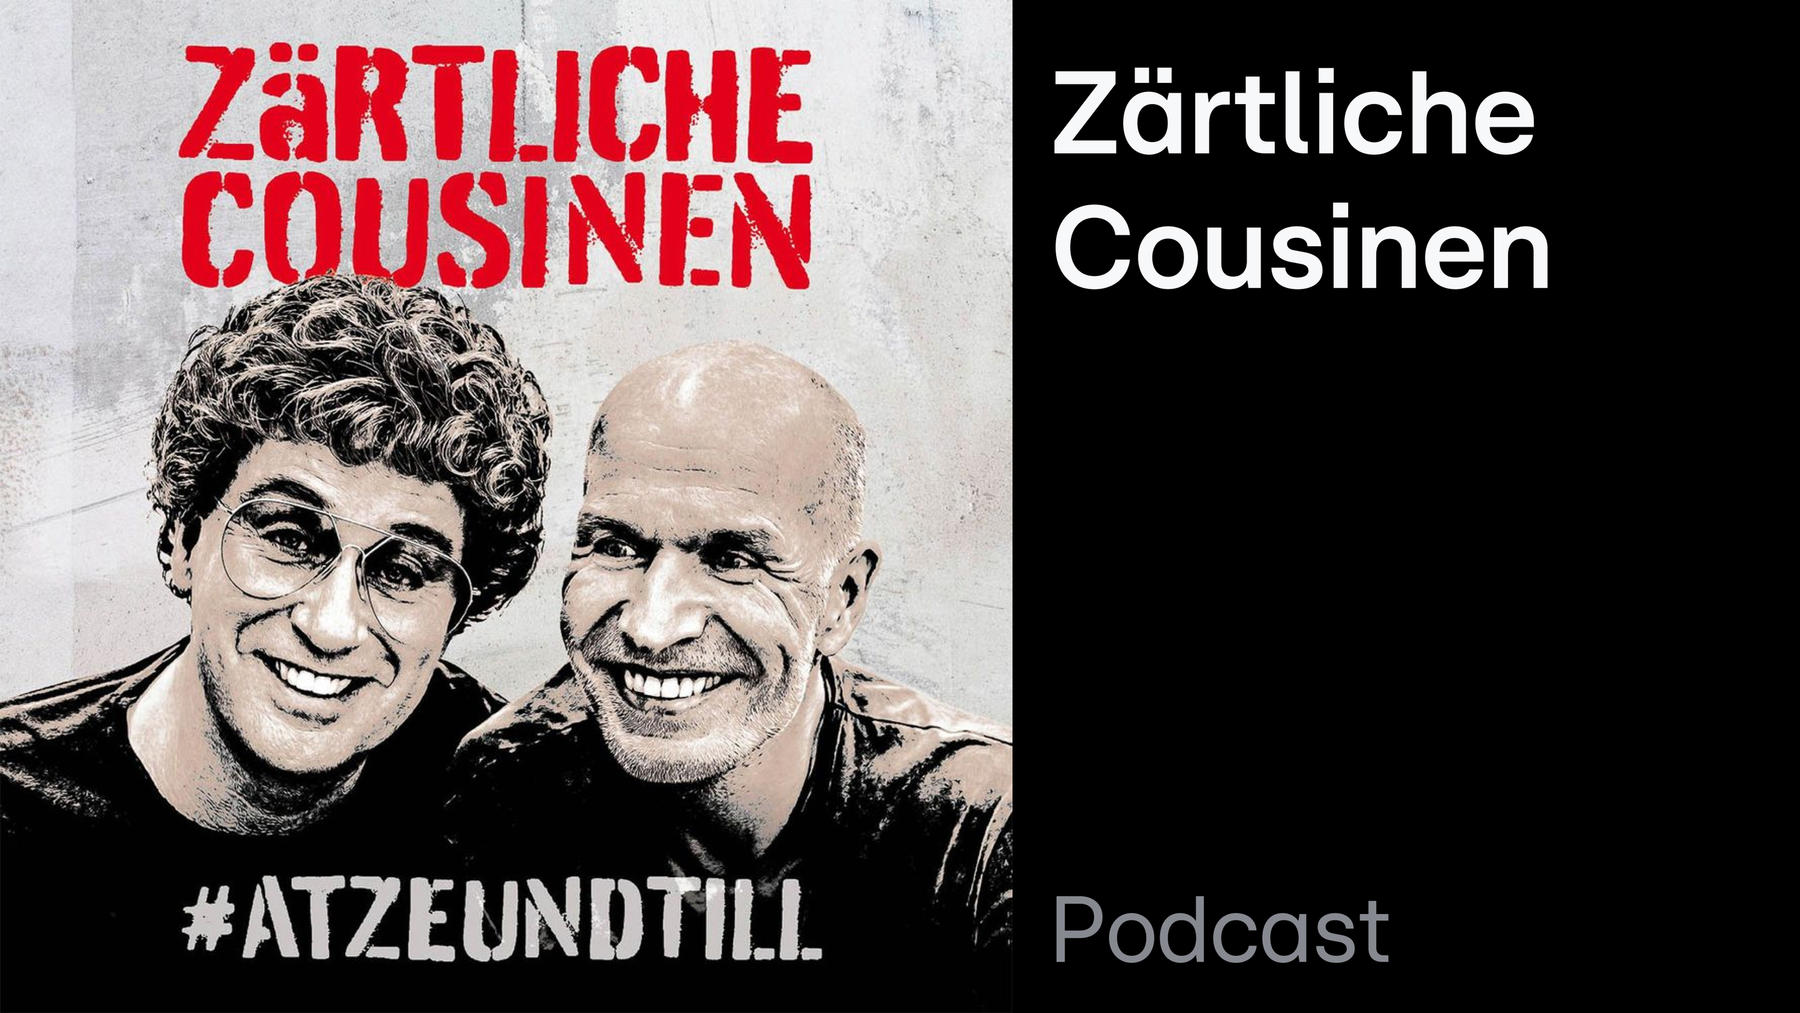 Podcast: Zärtliche Cousinen